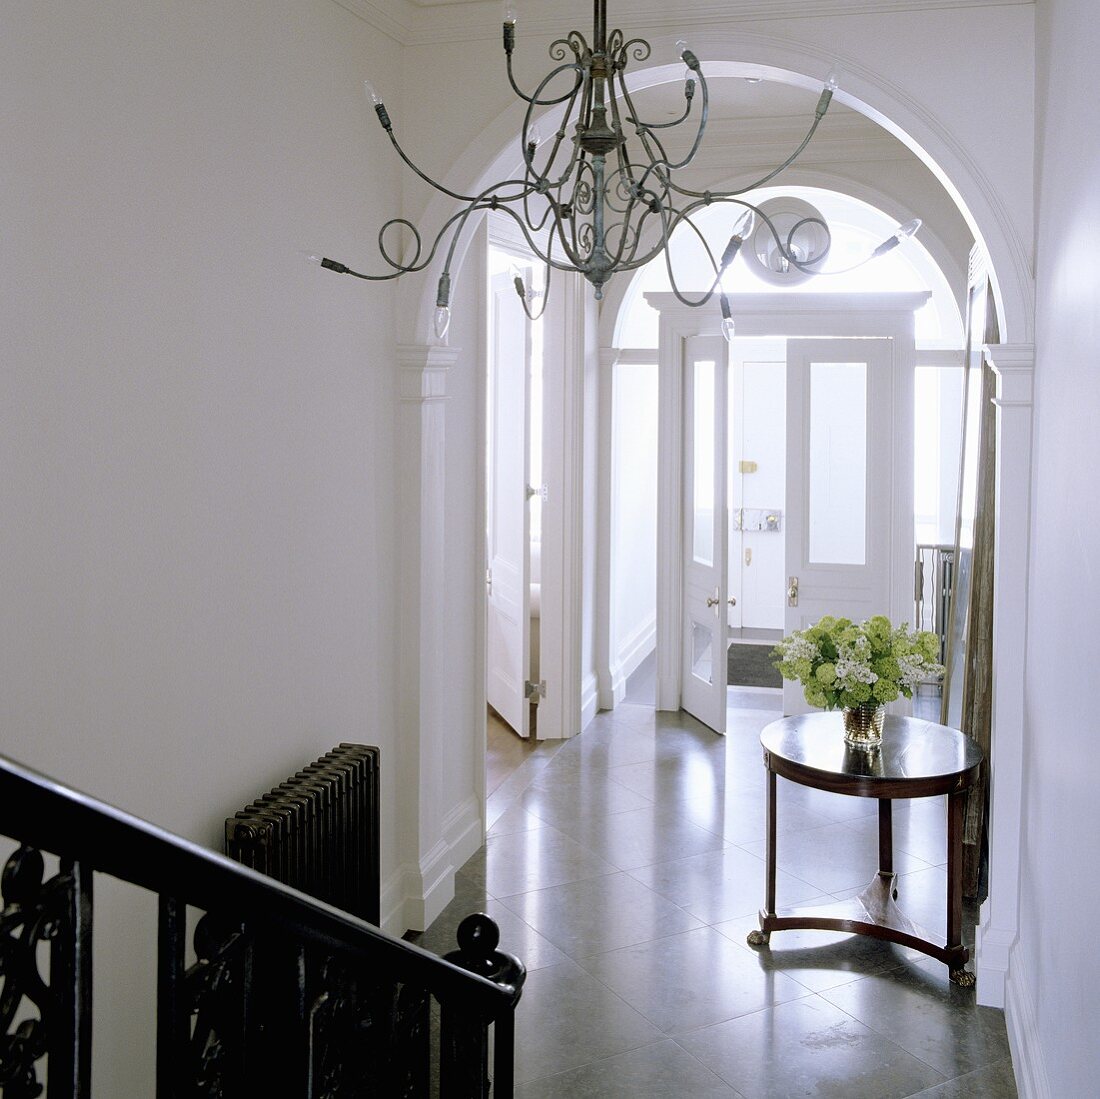 Kerzenleuchter mit Medusaarmen im eleganten Treppenhaus mit Rundbogen und Blick auf antikem Beistelltisch im Hauseingang